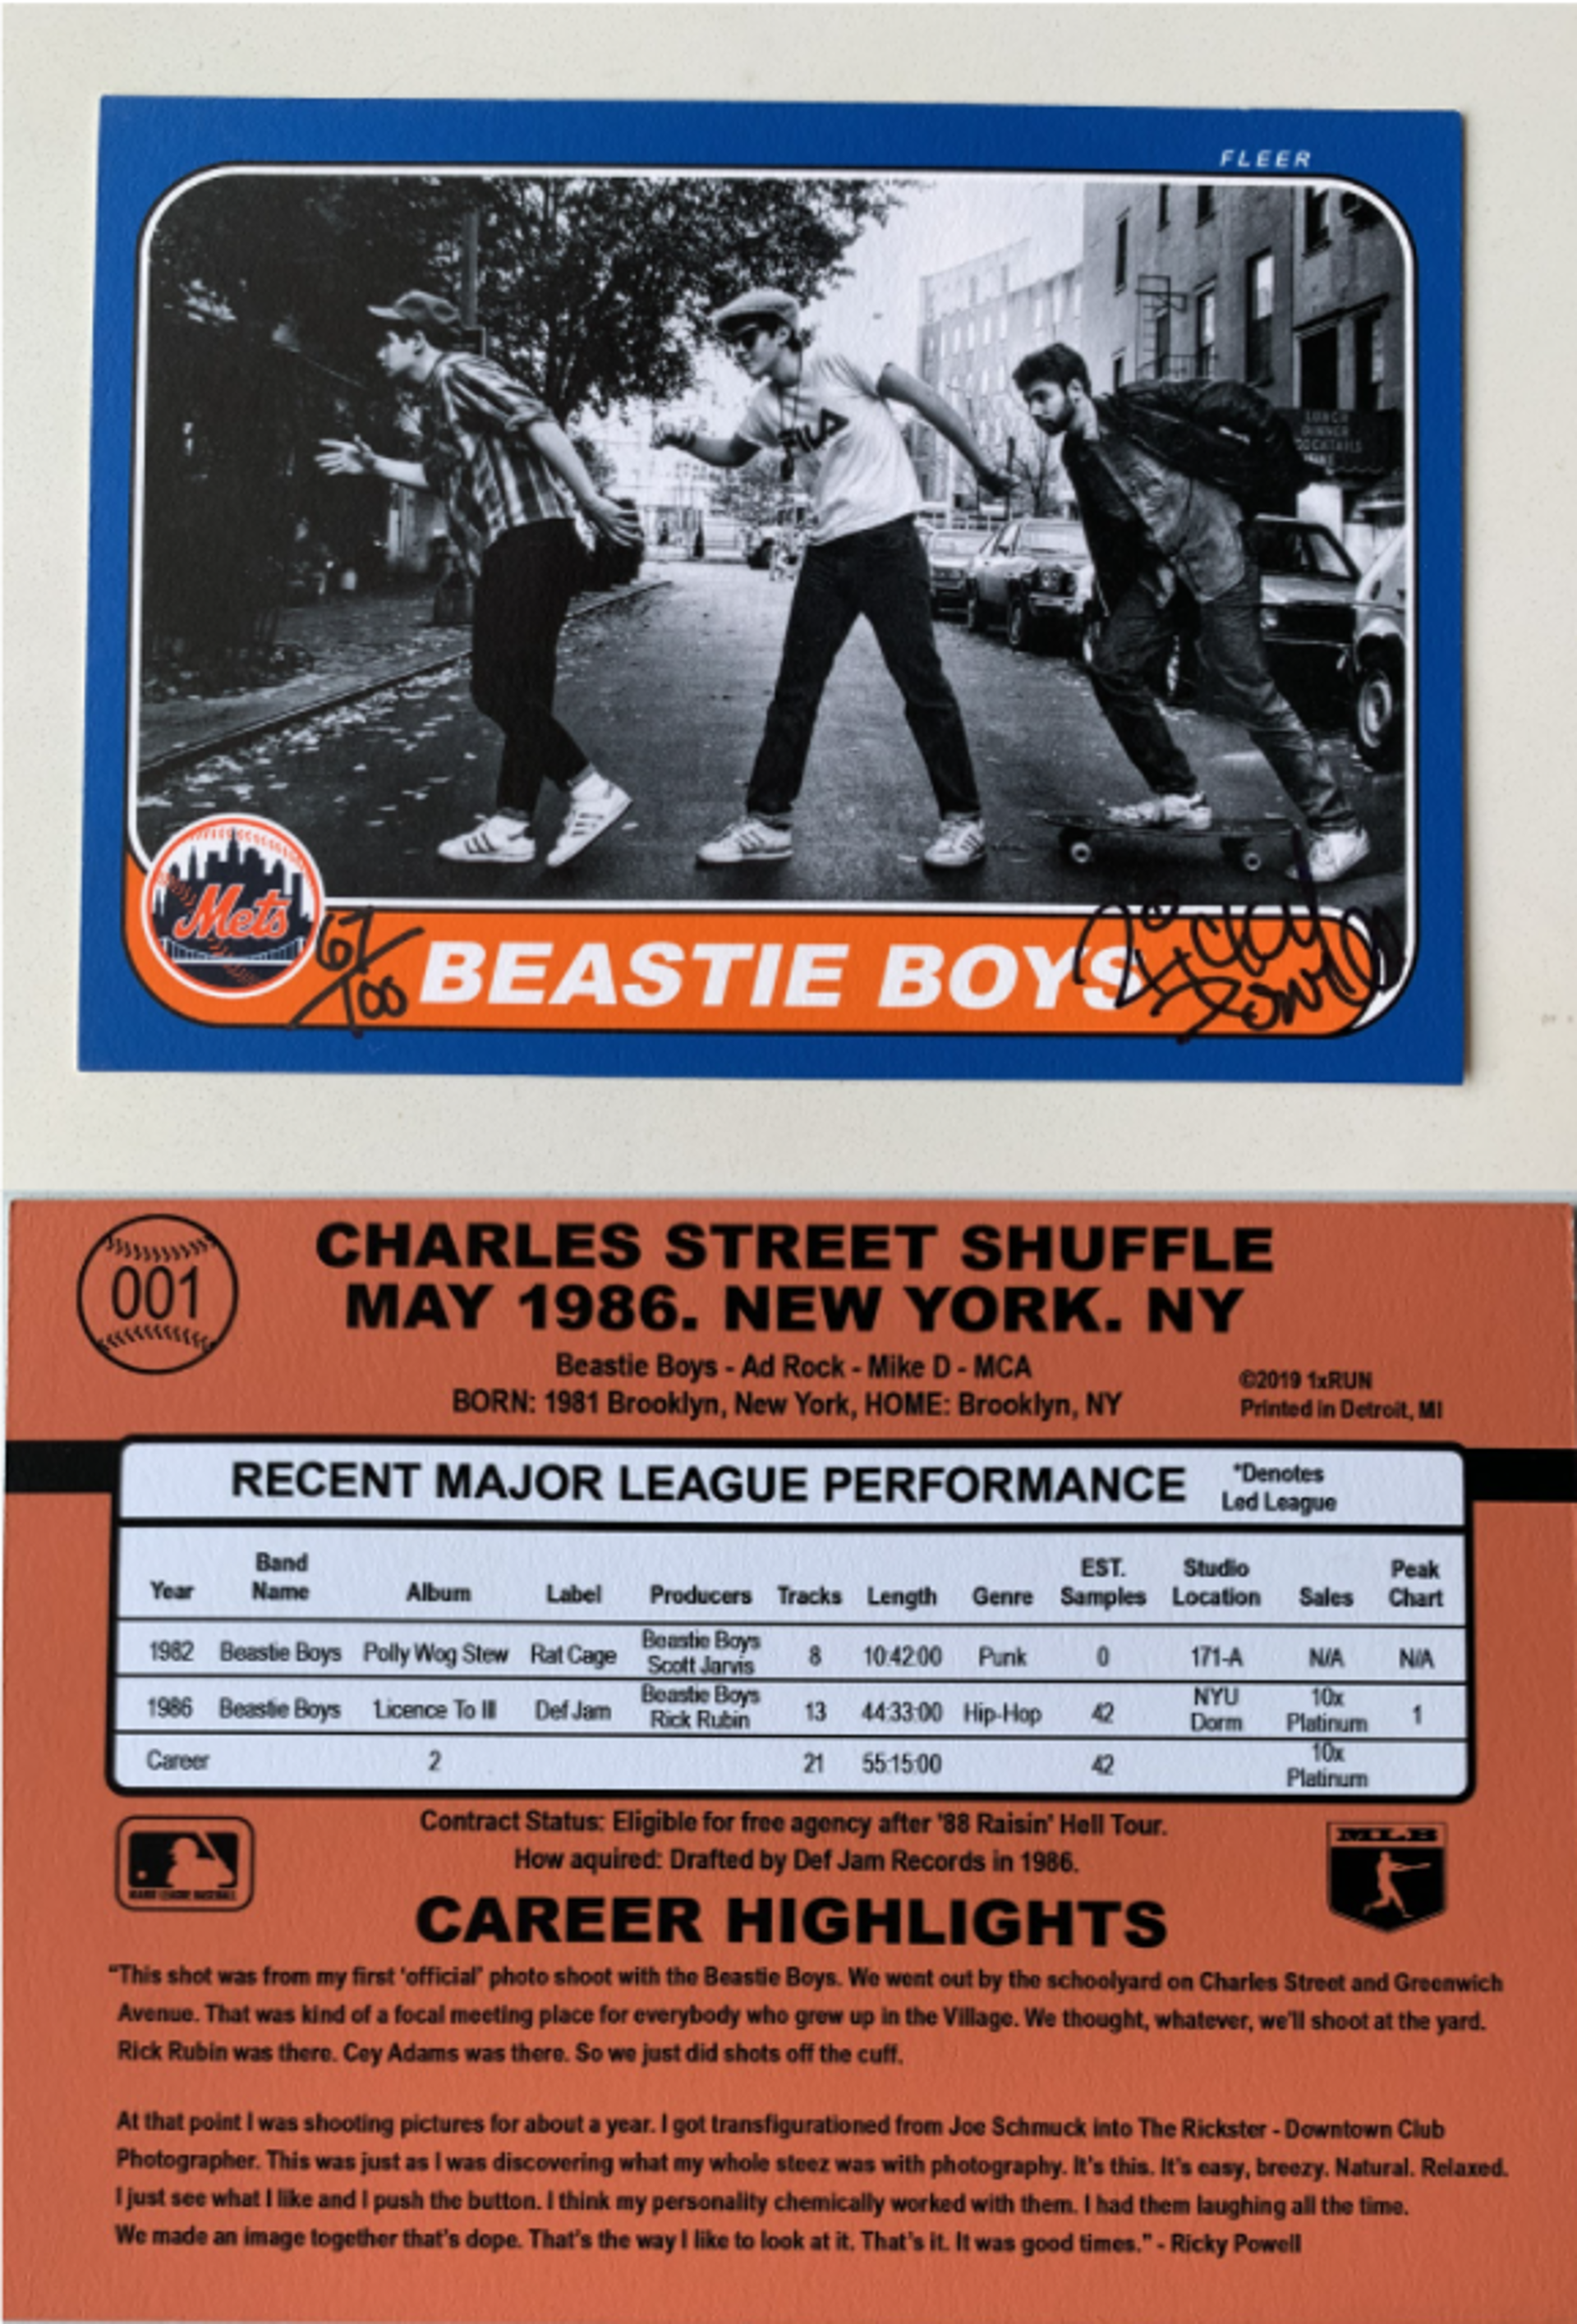 Charles Street Shuffle - May 1986 - New York, NY - Grand Slam Edition - Yankees Variant by Ricky Powell